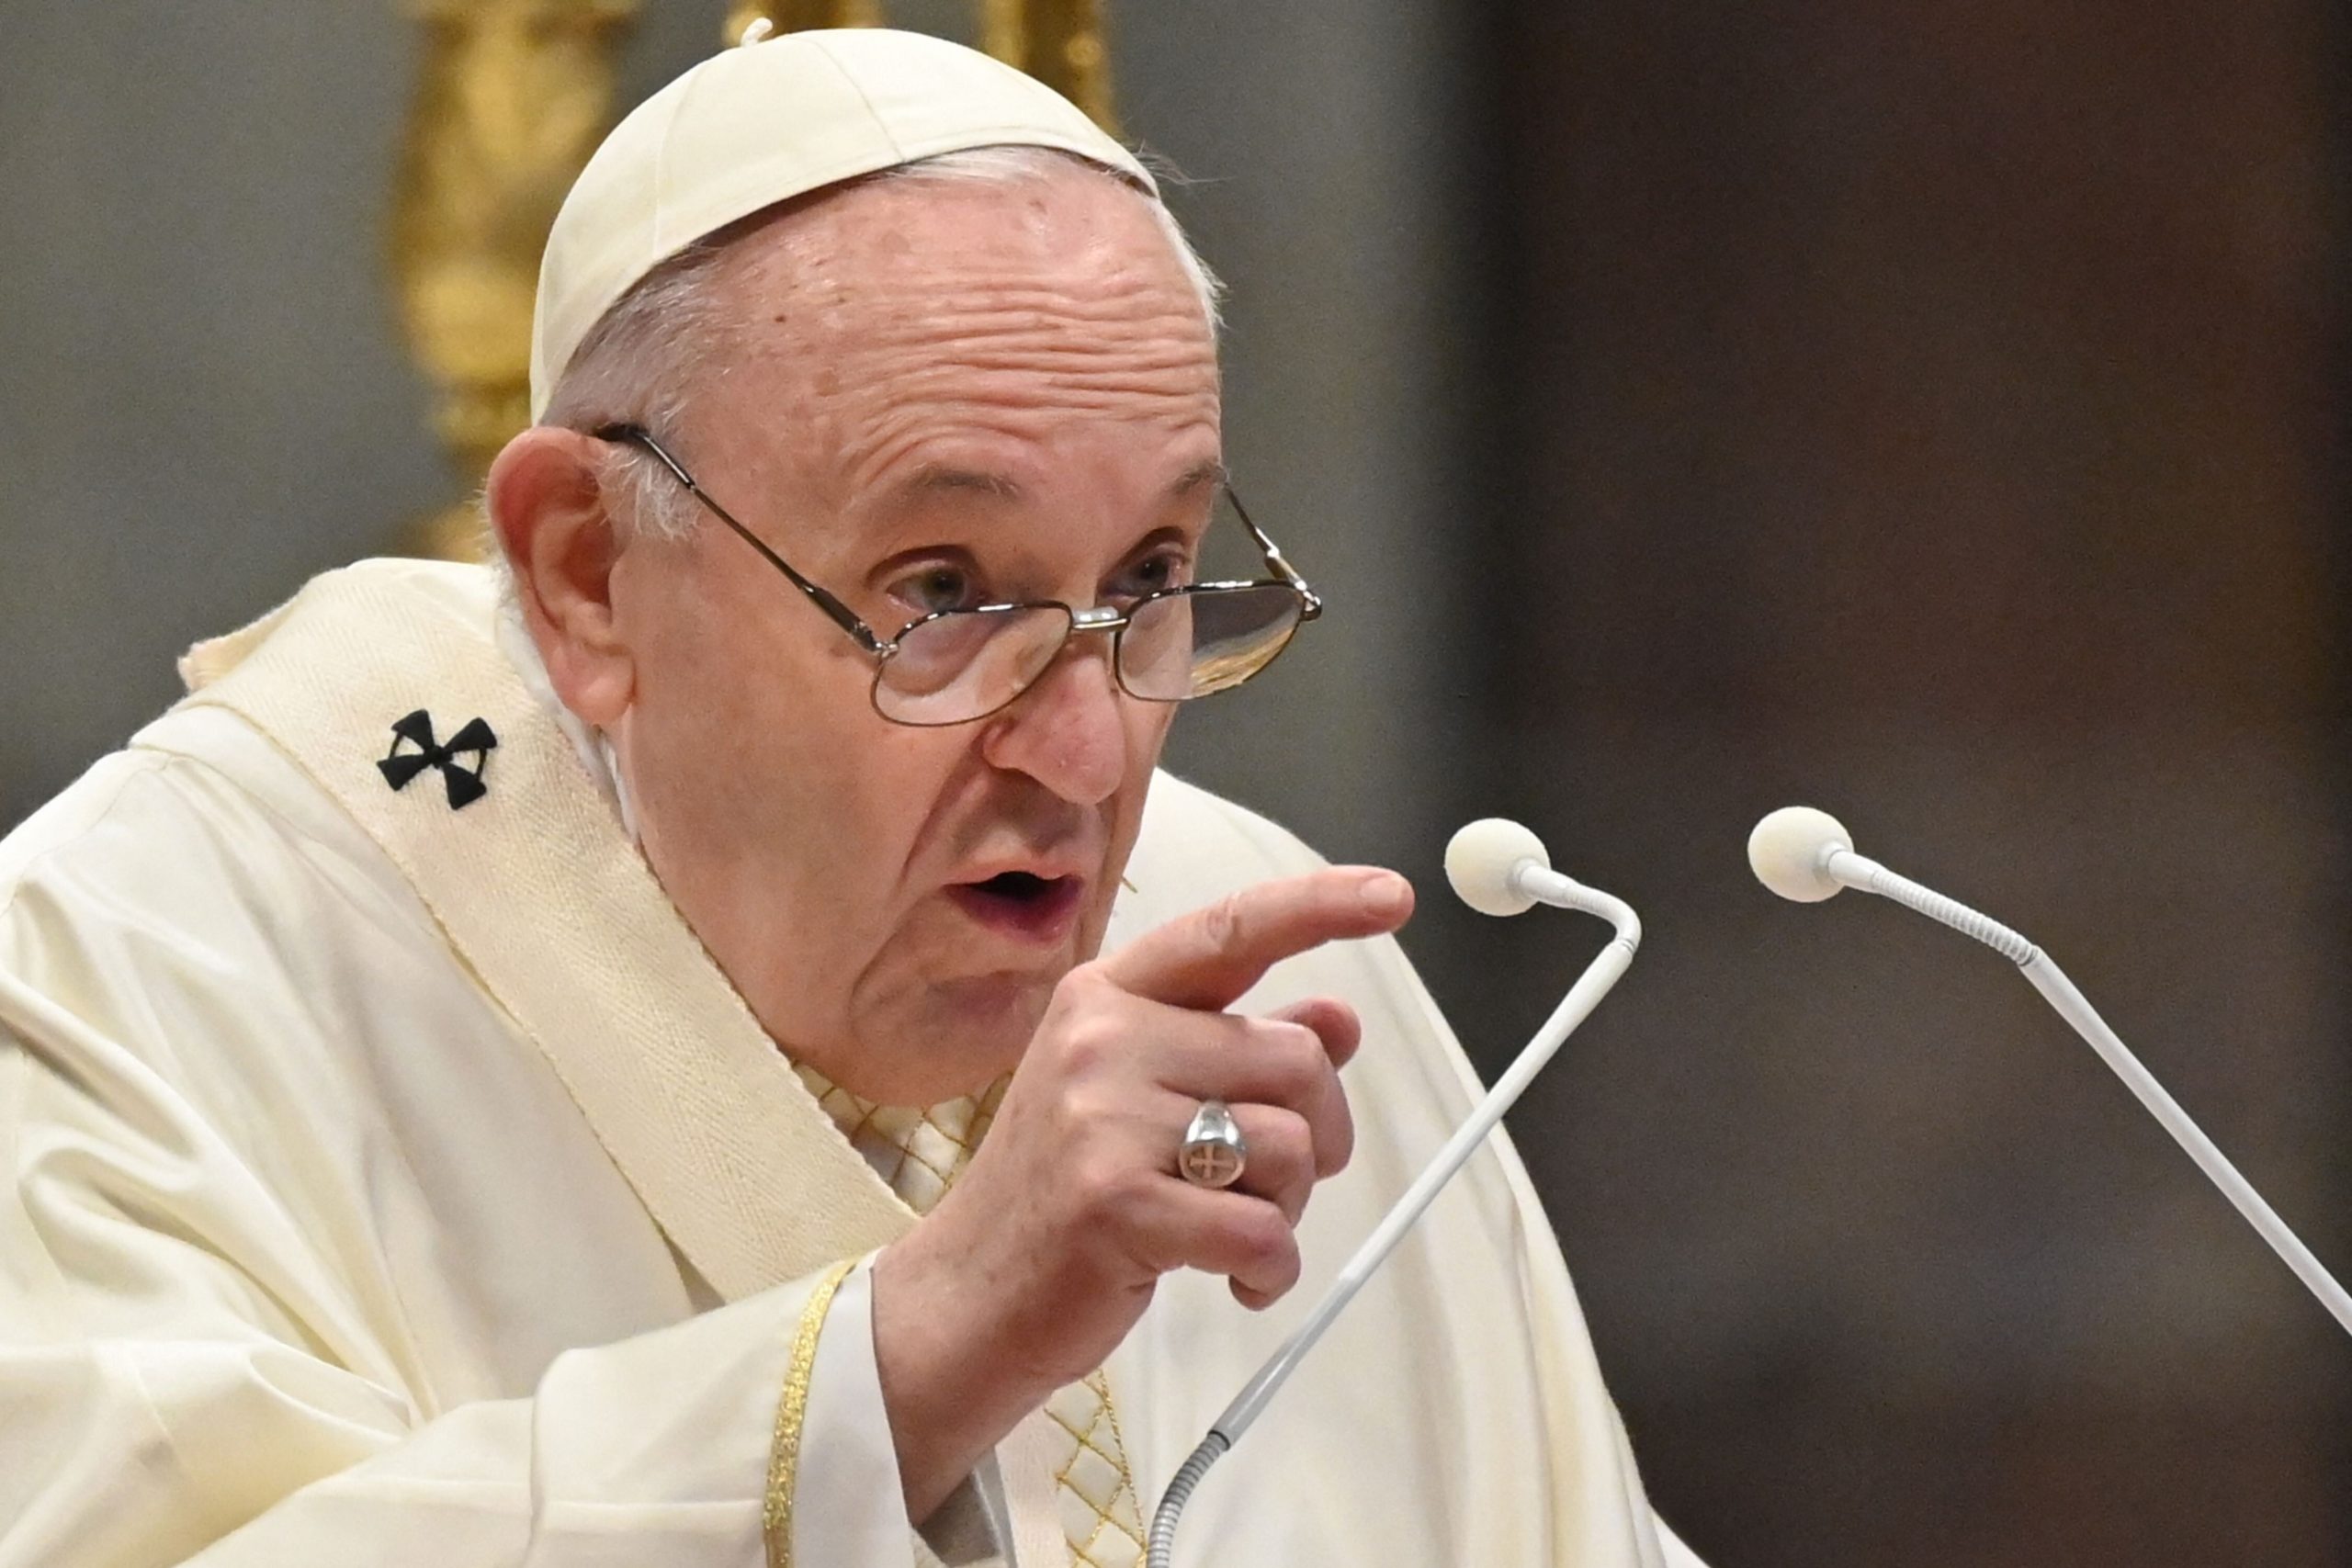 Le verità scomode e oscurate di Bergoglio